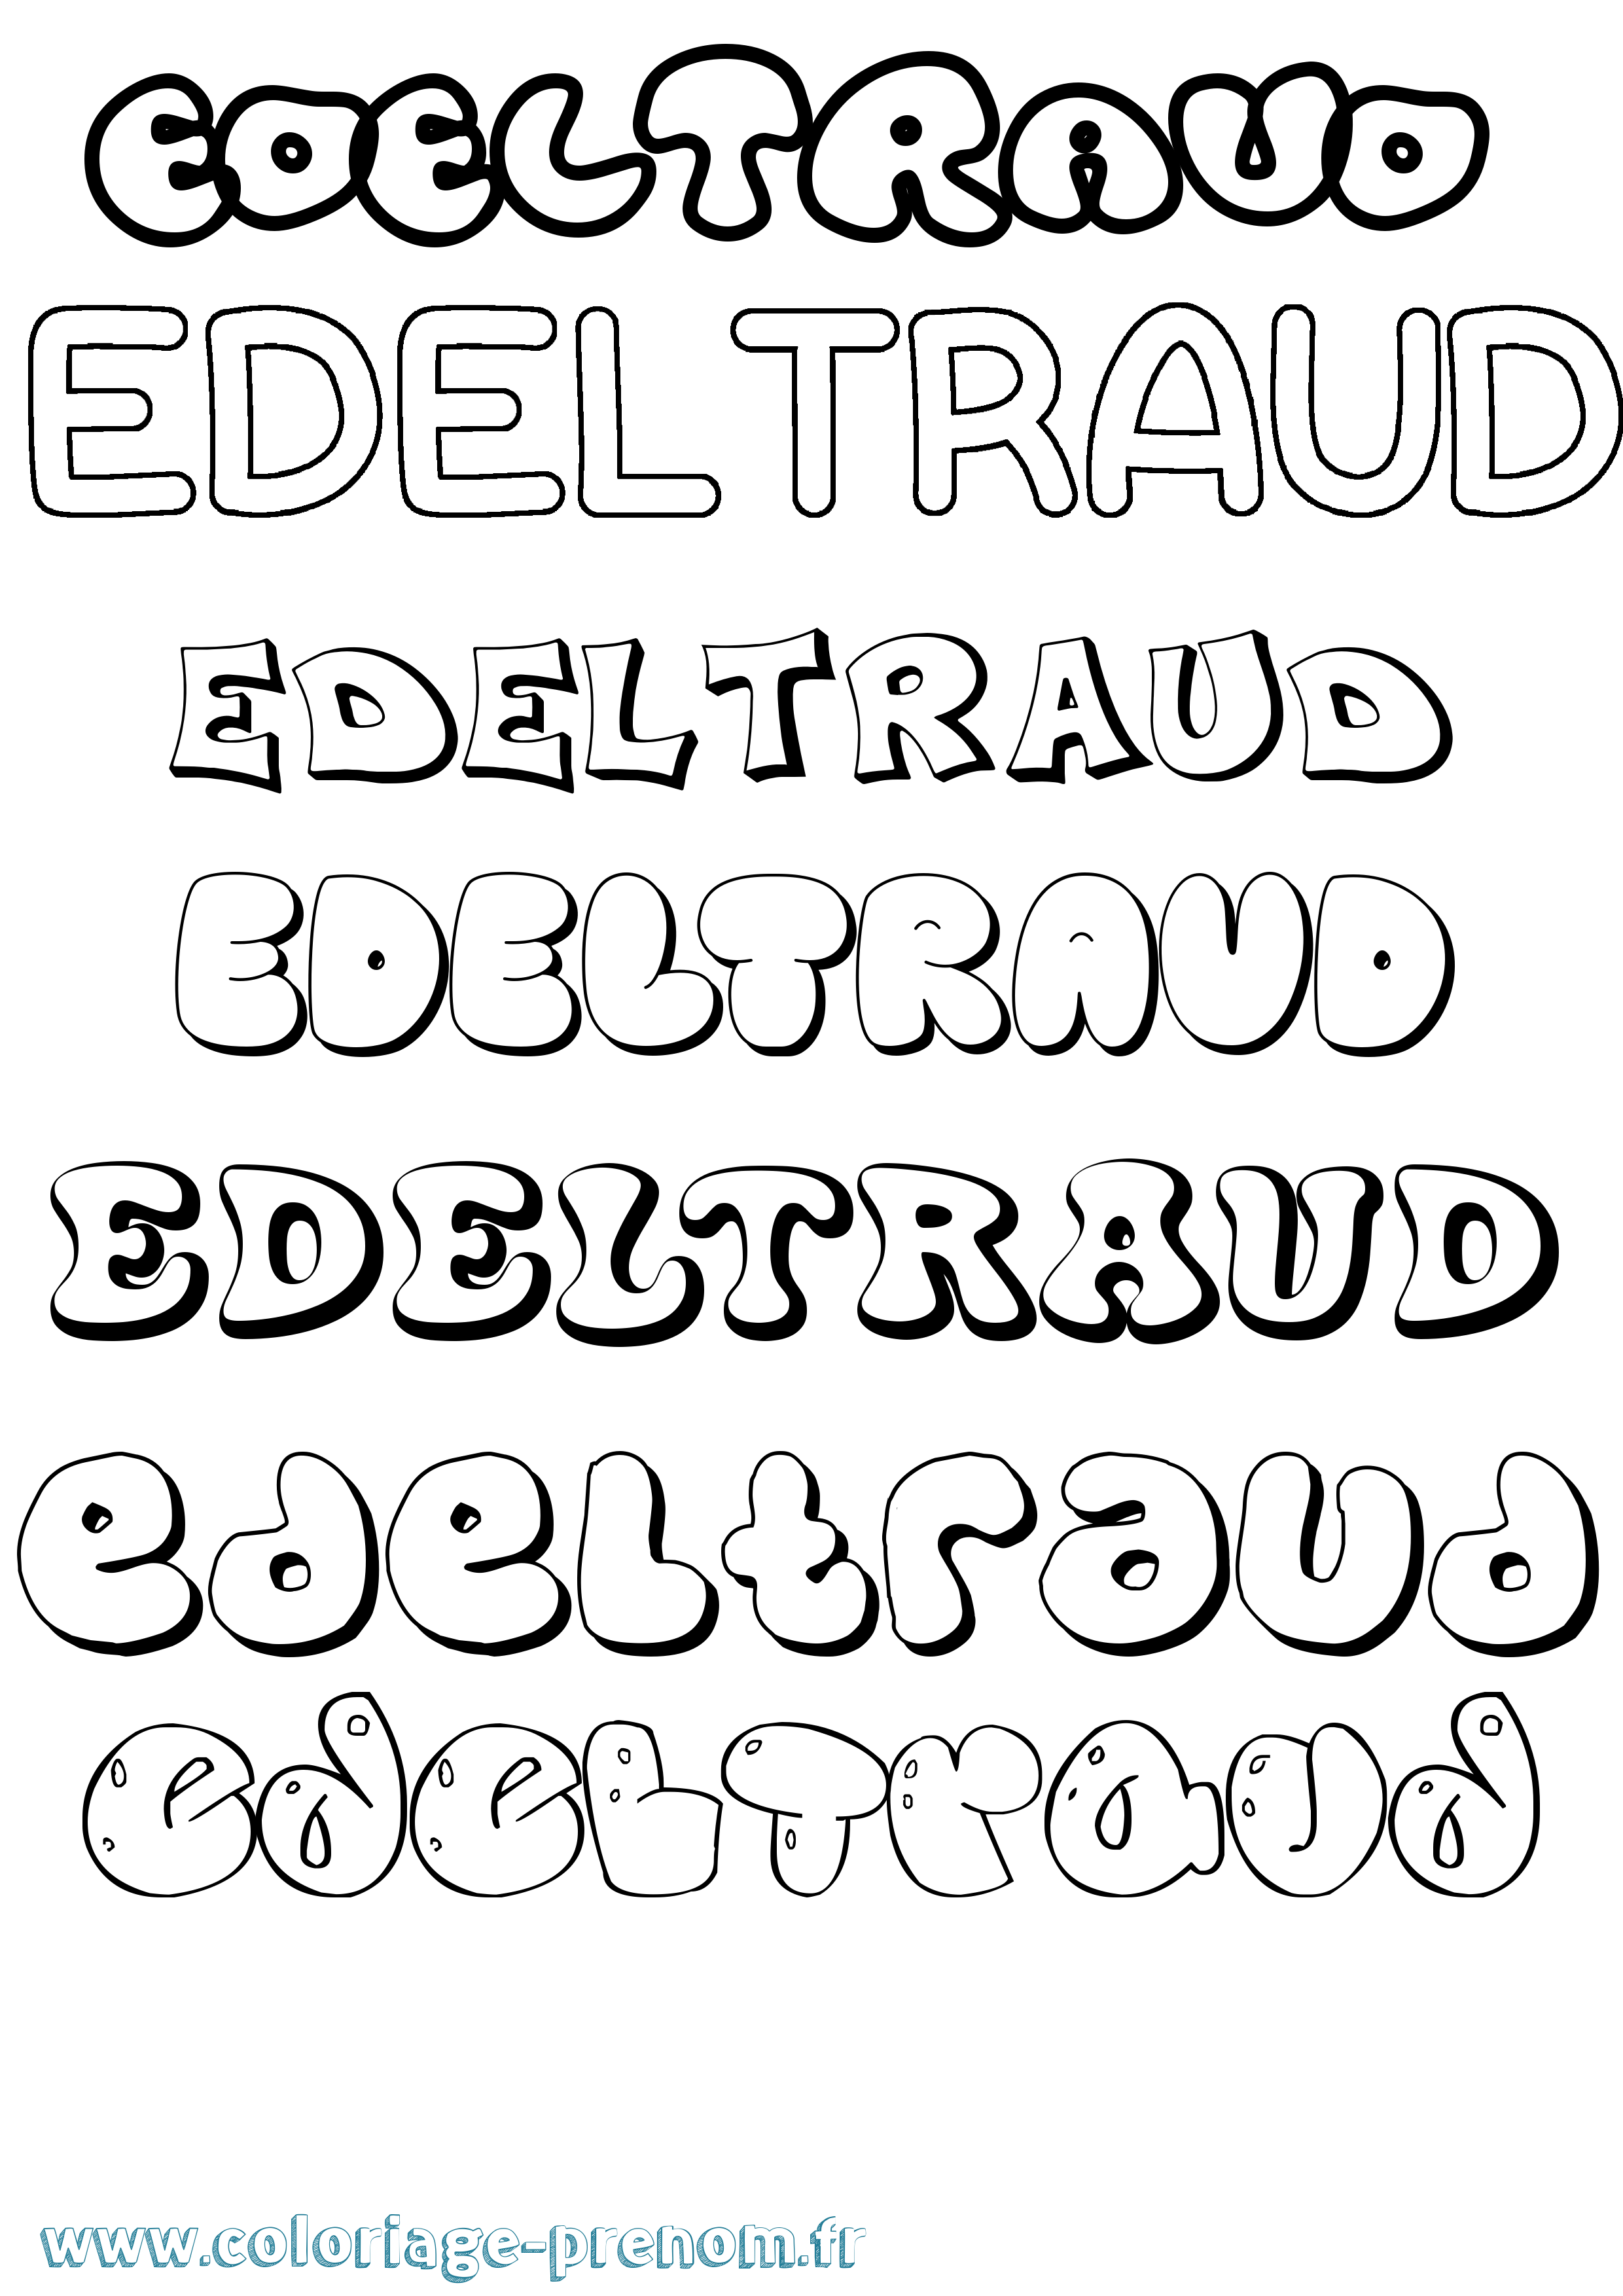 Coloriage prénom Edeltraud Bubble